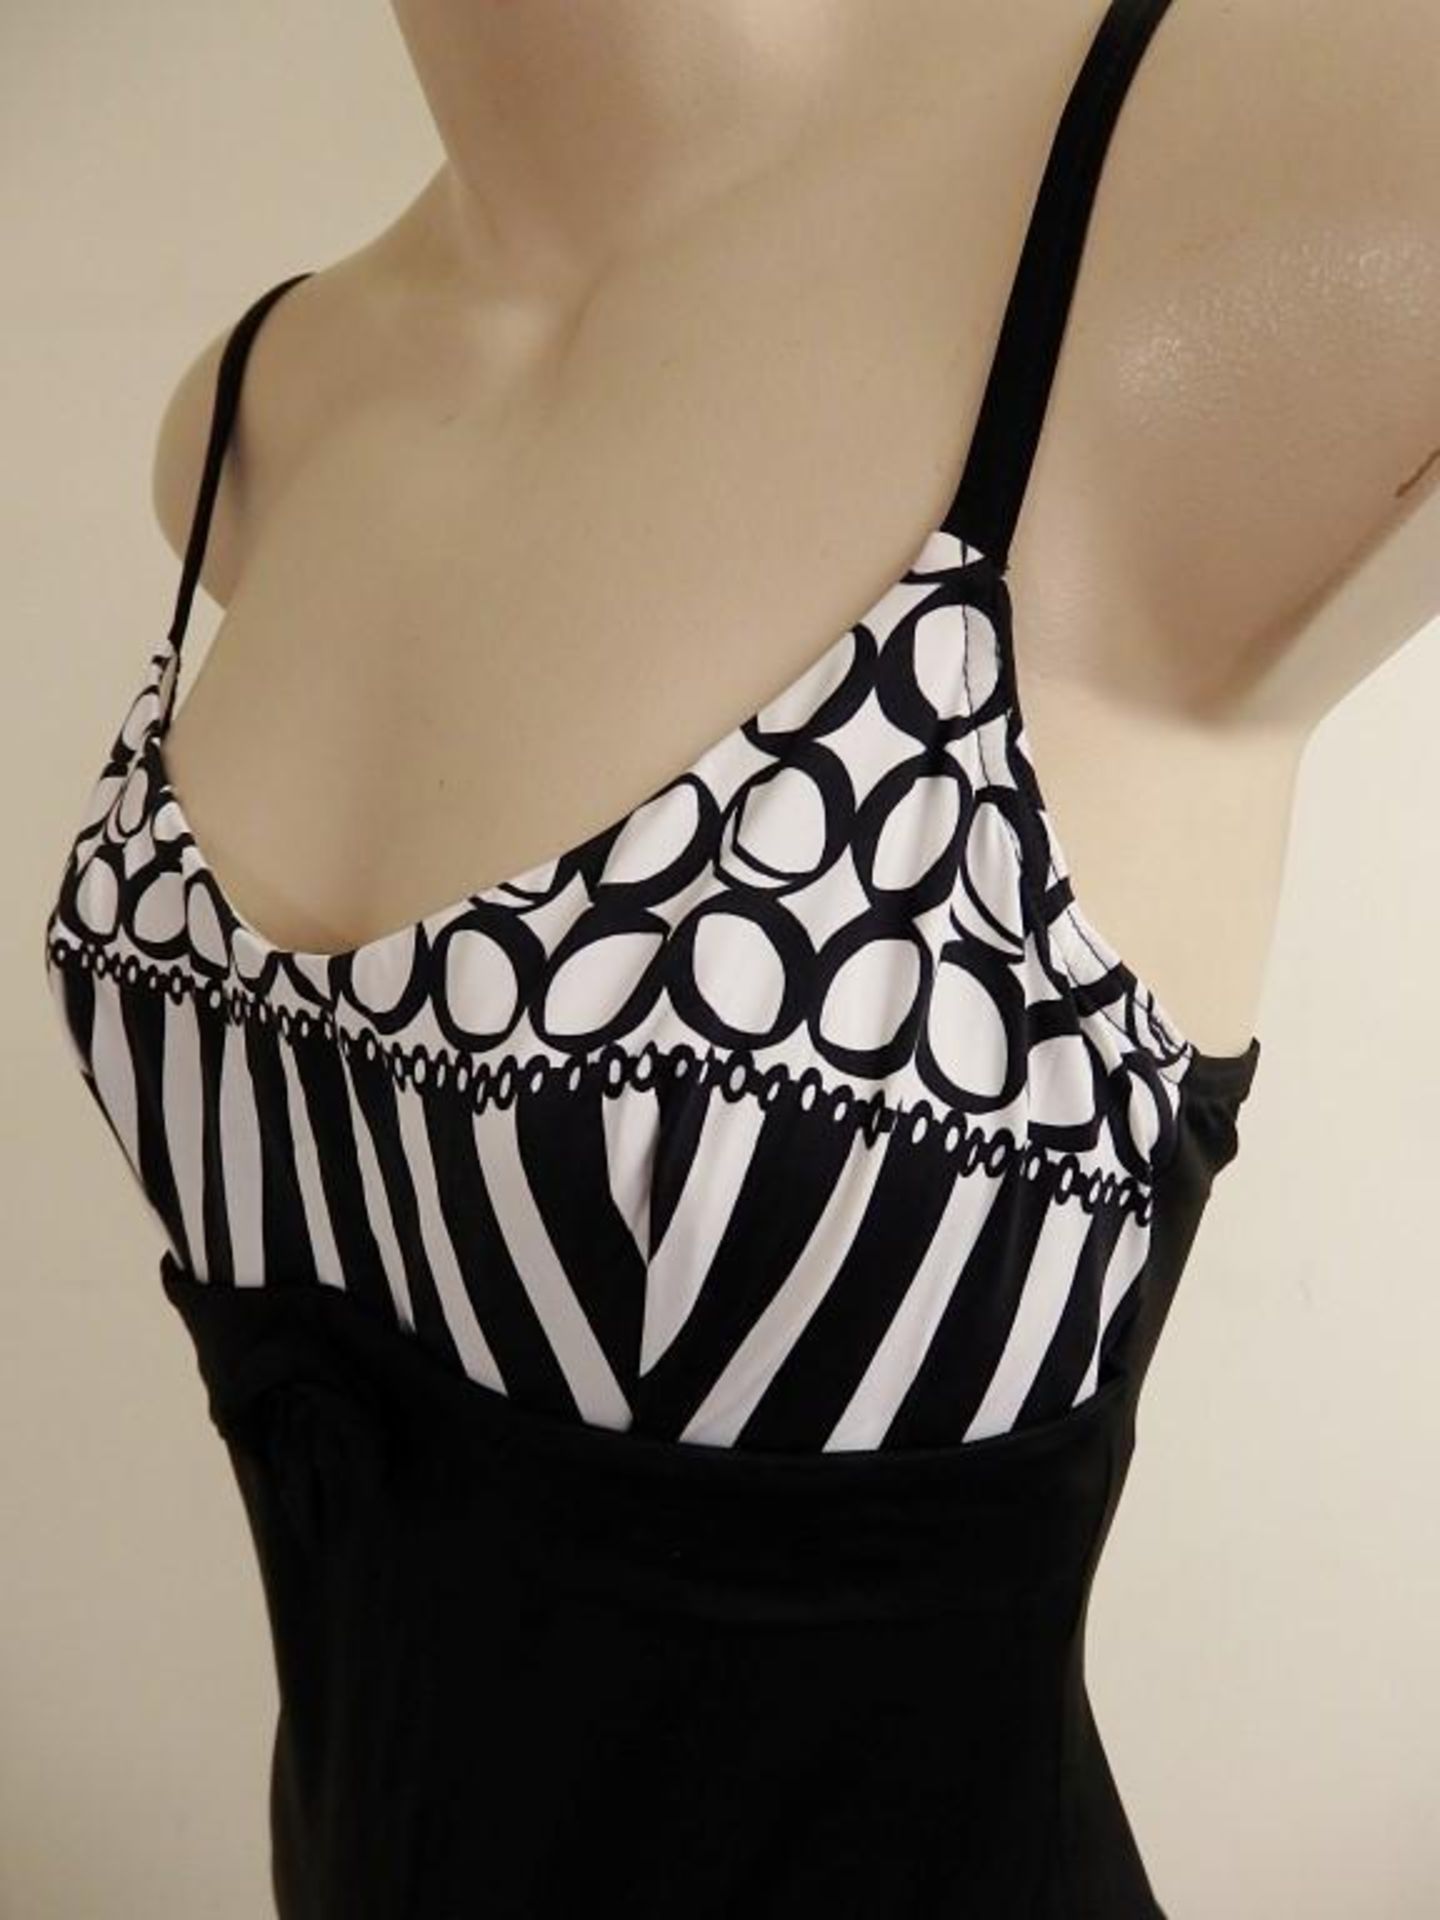 1 x Rasurel - Black/White patterned - Borneo Swimsuit - R20435 - Size 2C - UK 32 - Fr 85 - EU/Int 7 - Image 2 of 5